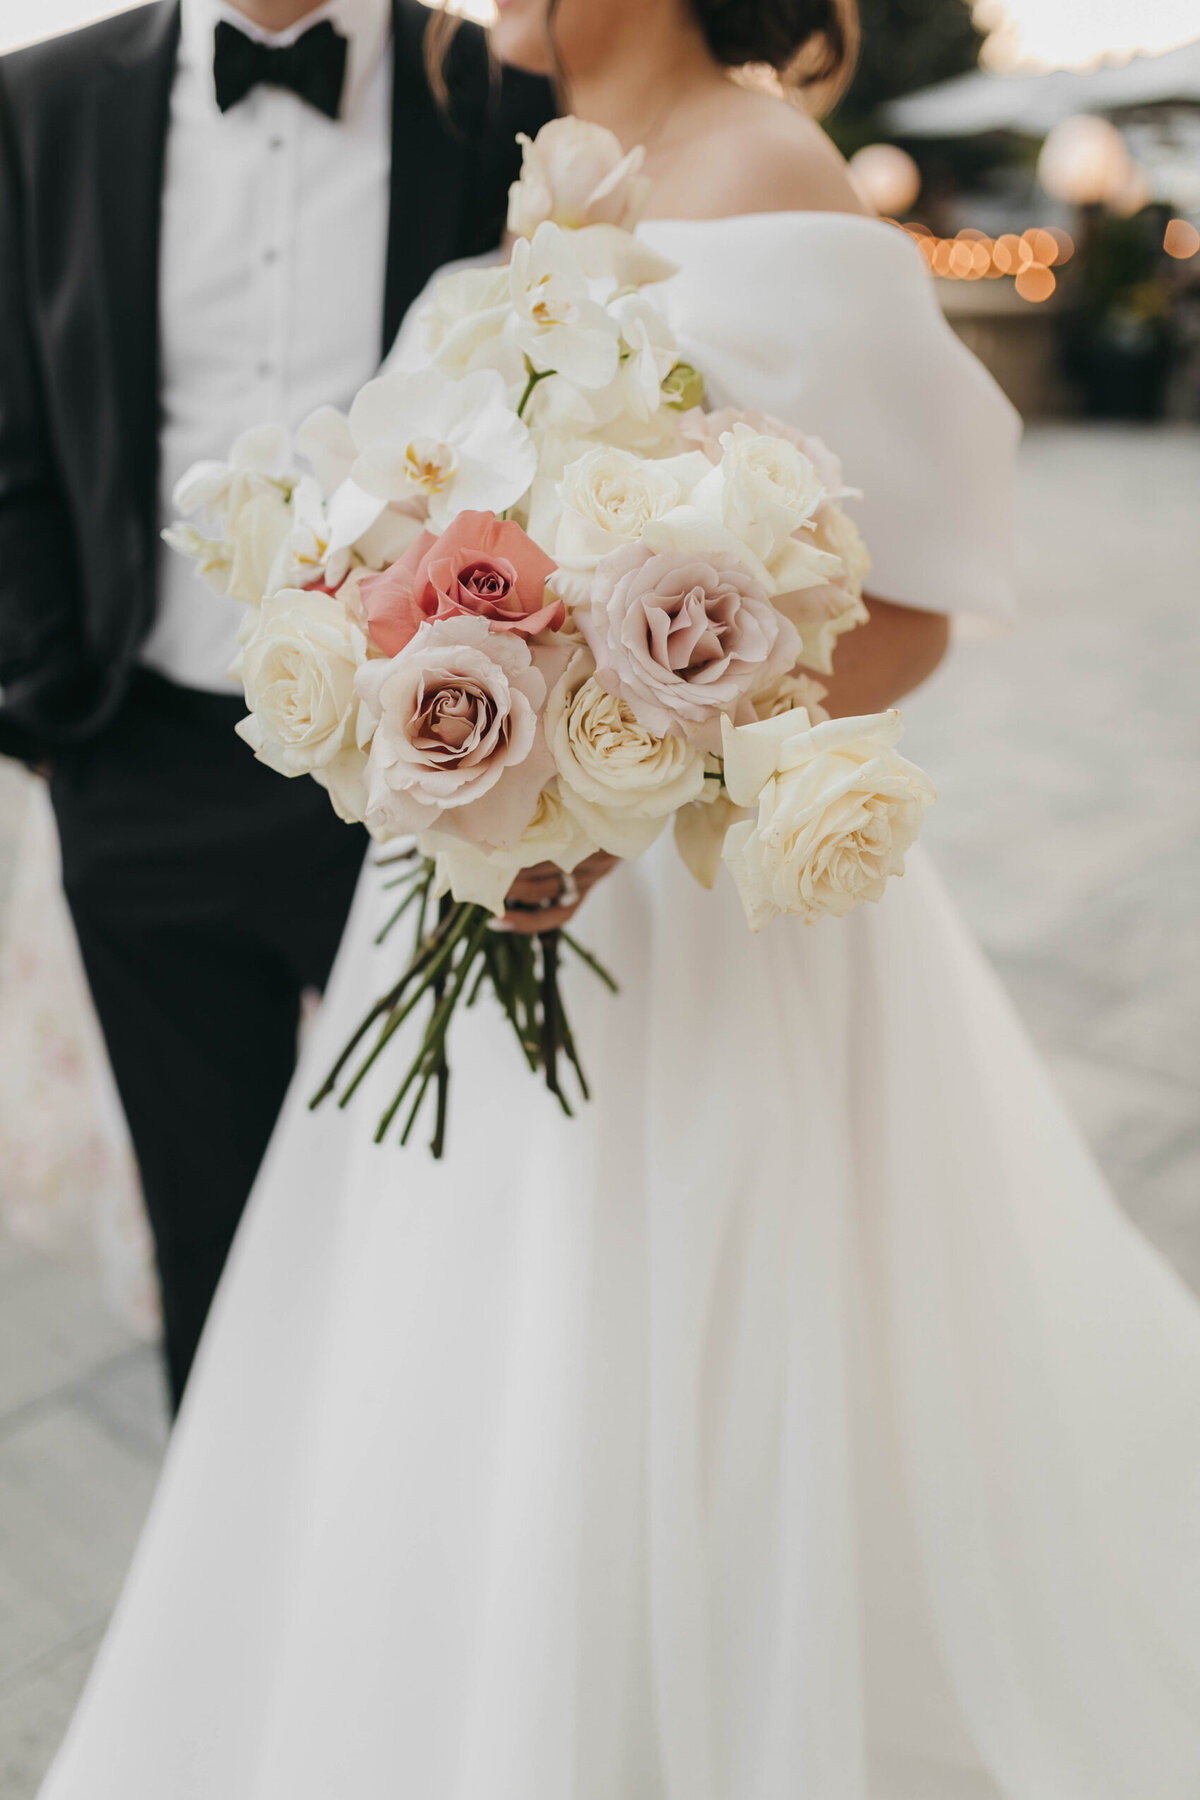 A close up photo of the bride's floral arrangement.